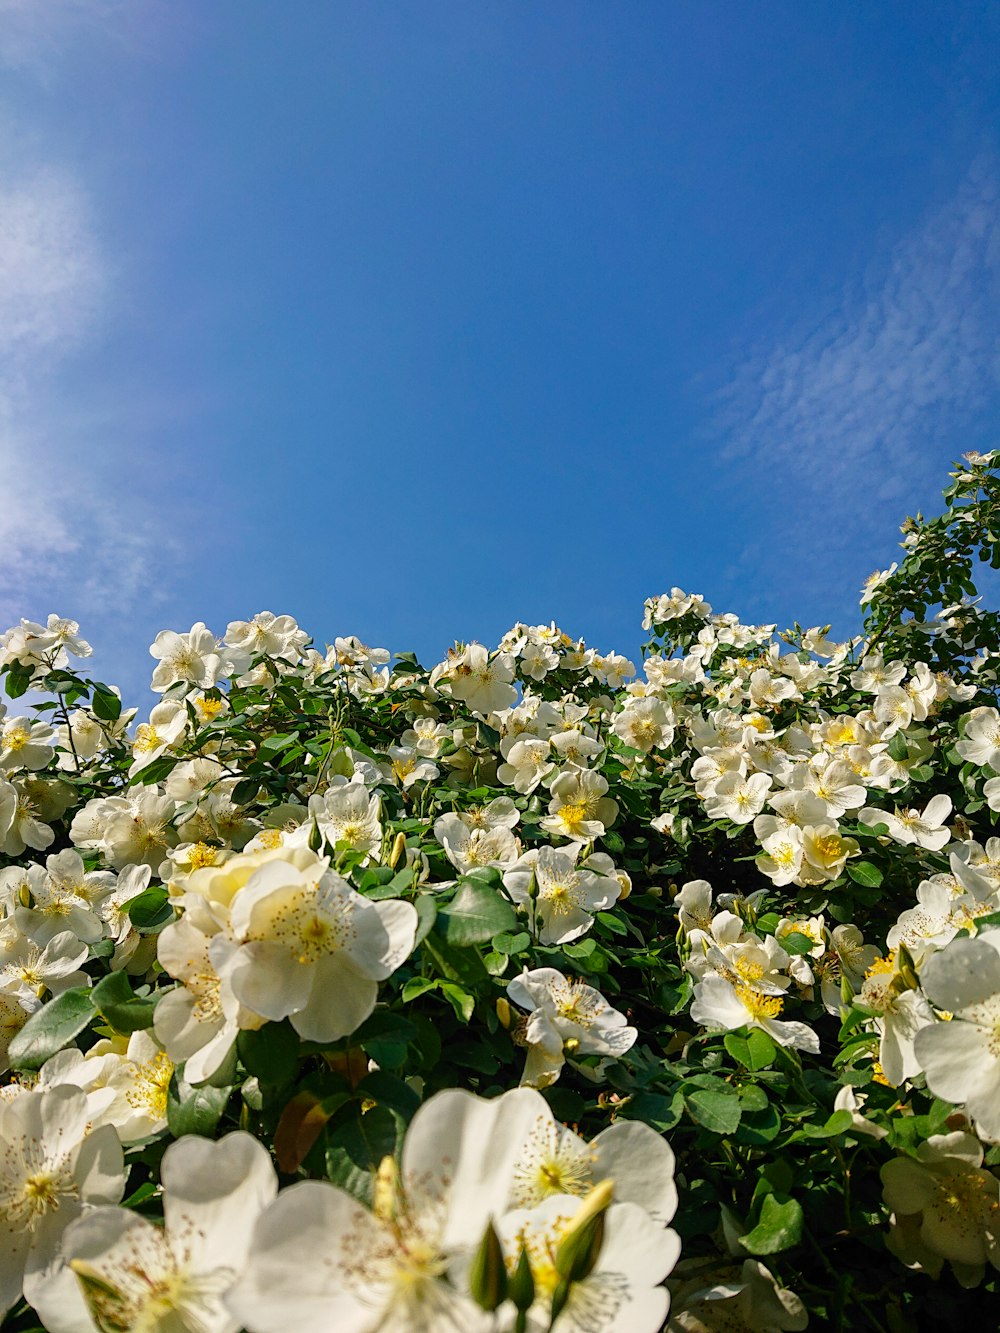 푸른 하늘 아래 하얀 꽃이 가득한 들판